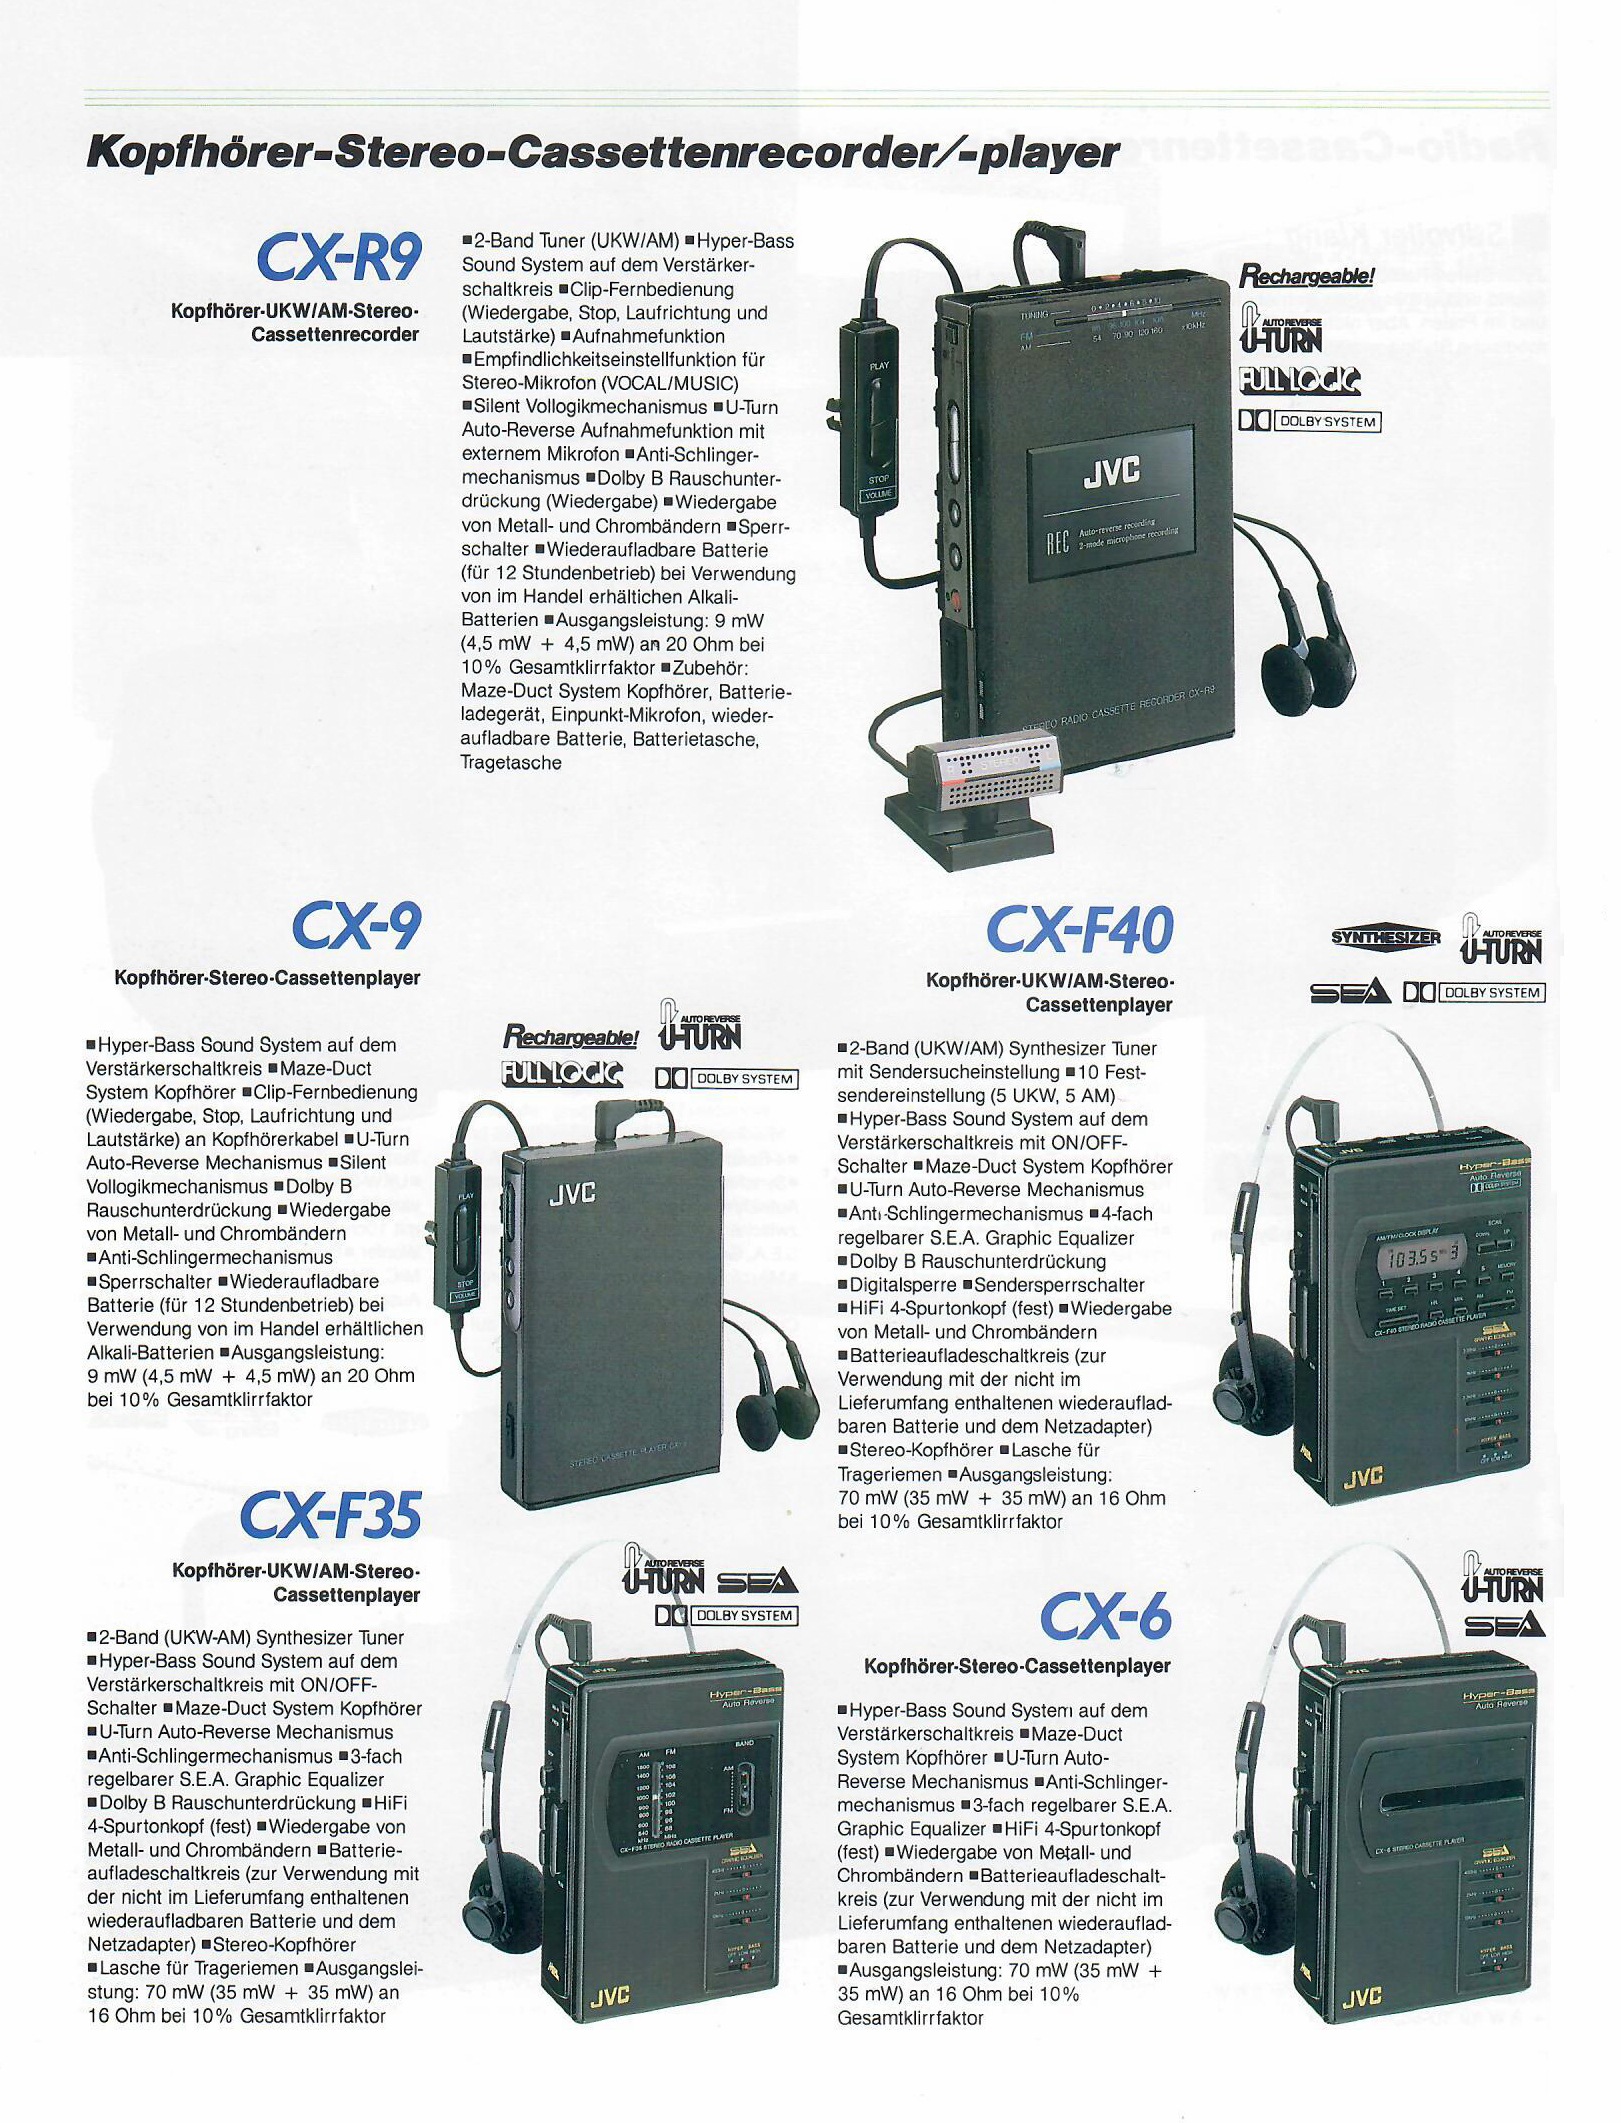 JVC CX- Prospekt-1989.jpg